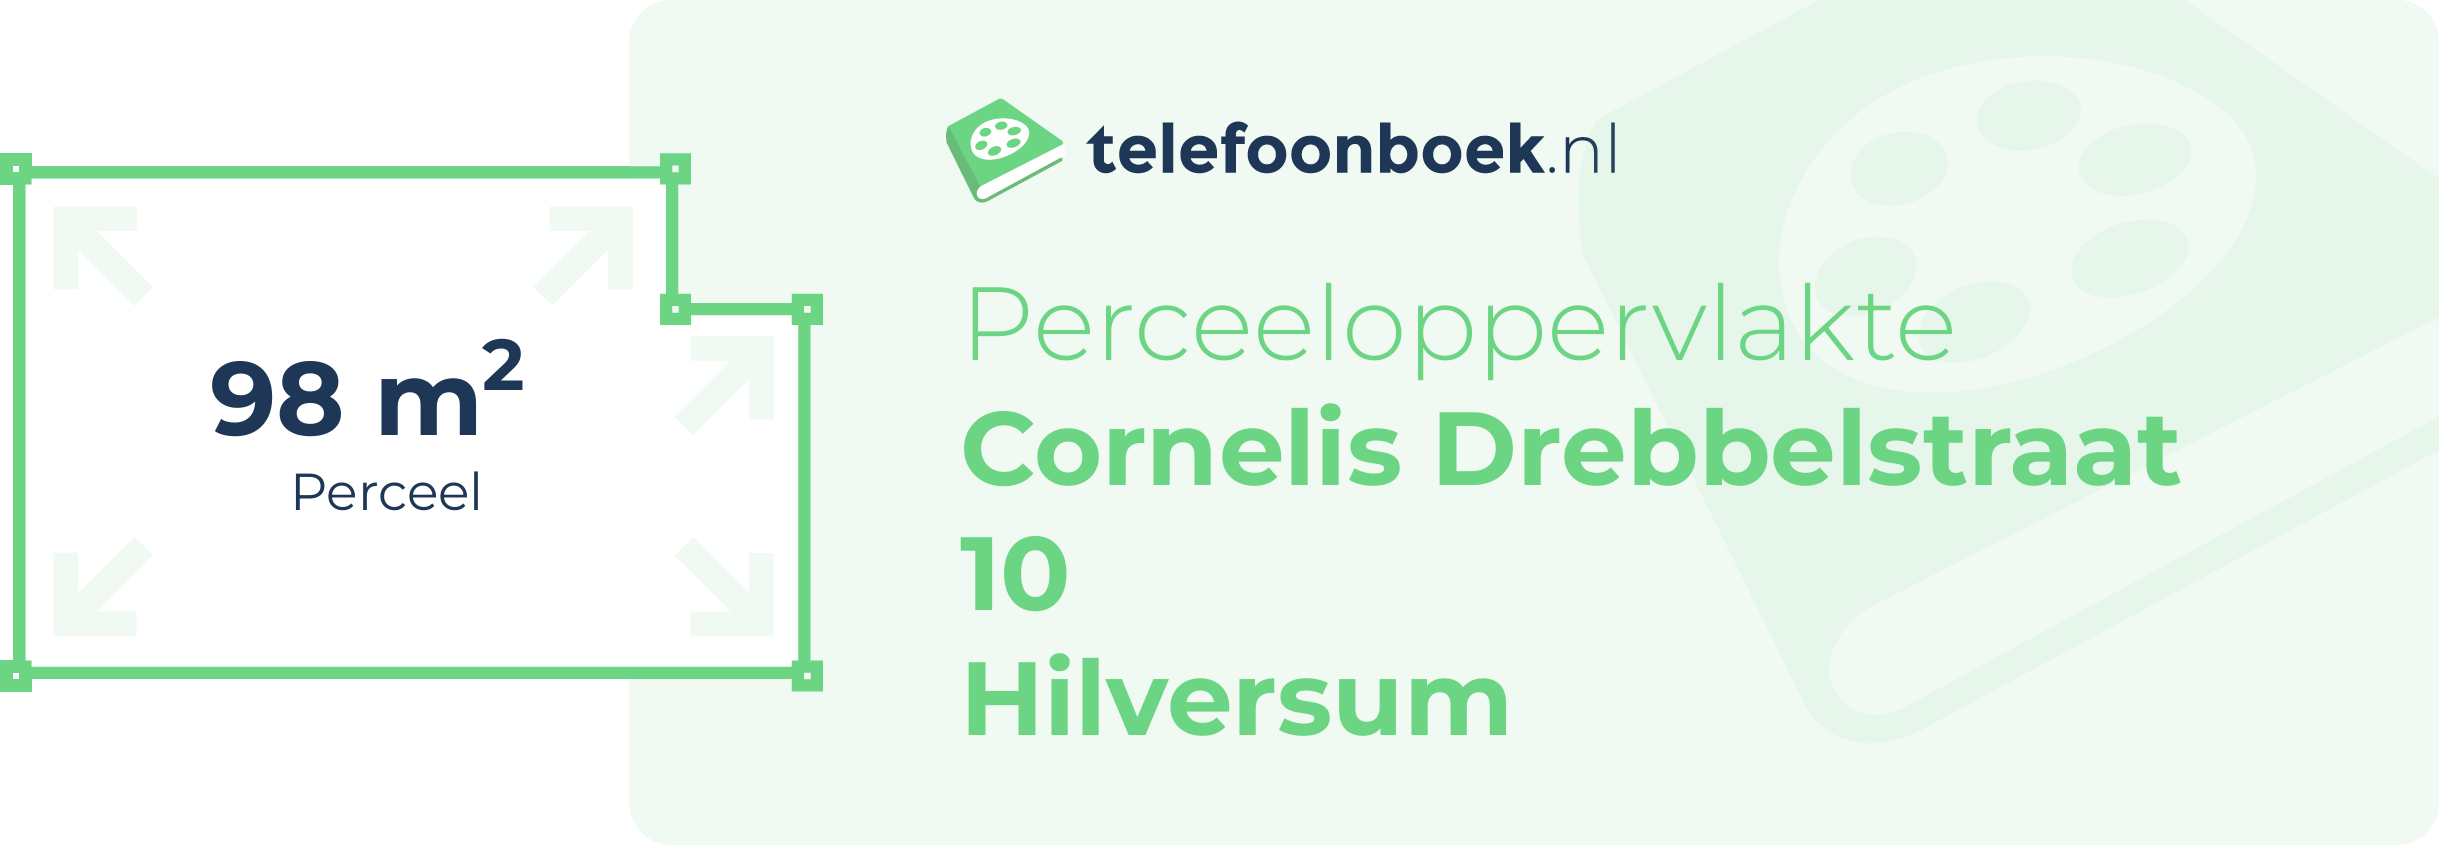 Perceeloppervlakte Cornelis Drebbelstraat 10 Hilversum